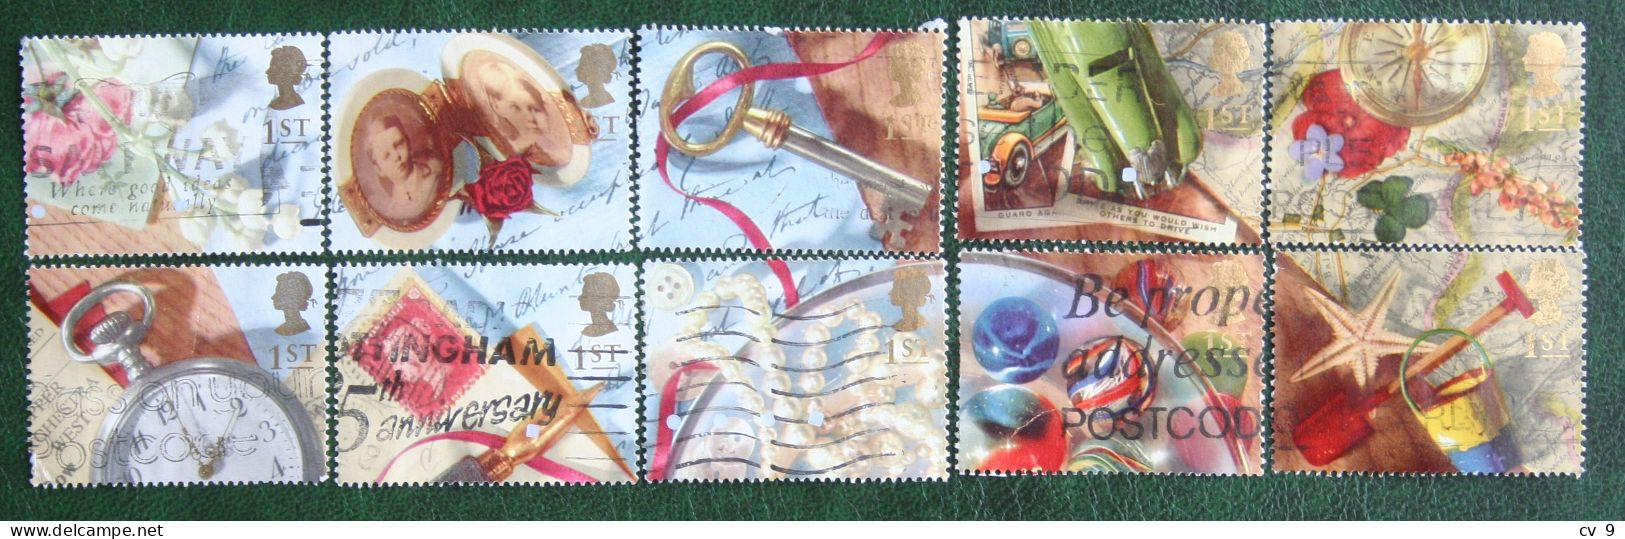 Greetings Booklet Stamps Memories (Mi 1377-1386) 1992 Used Gebruikt Oblitere ENGLAND GRANDE-BRETAGNE GB GREAT BRITAIN - Used Stamps